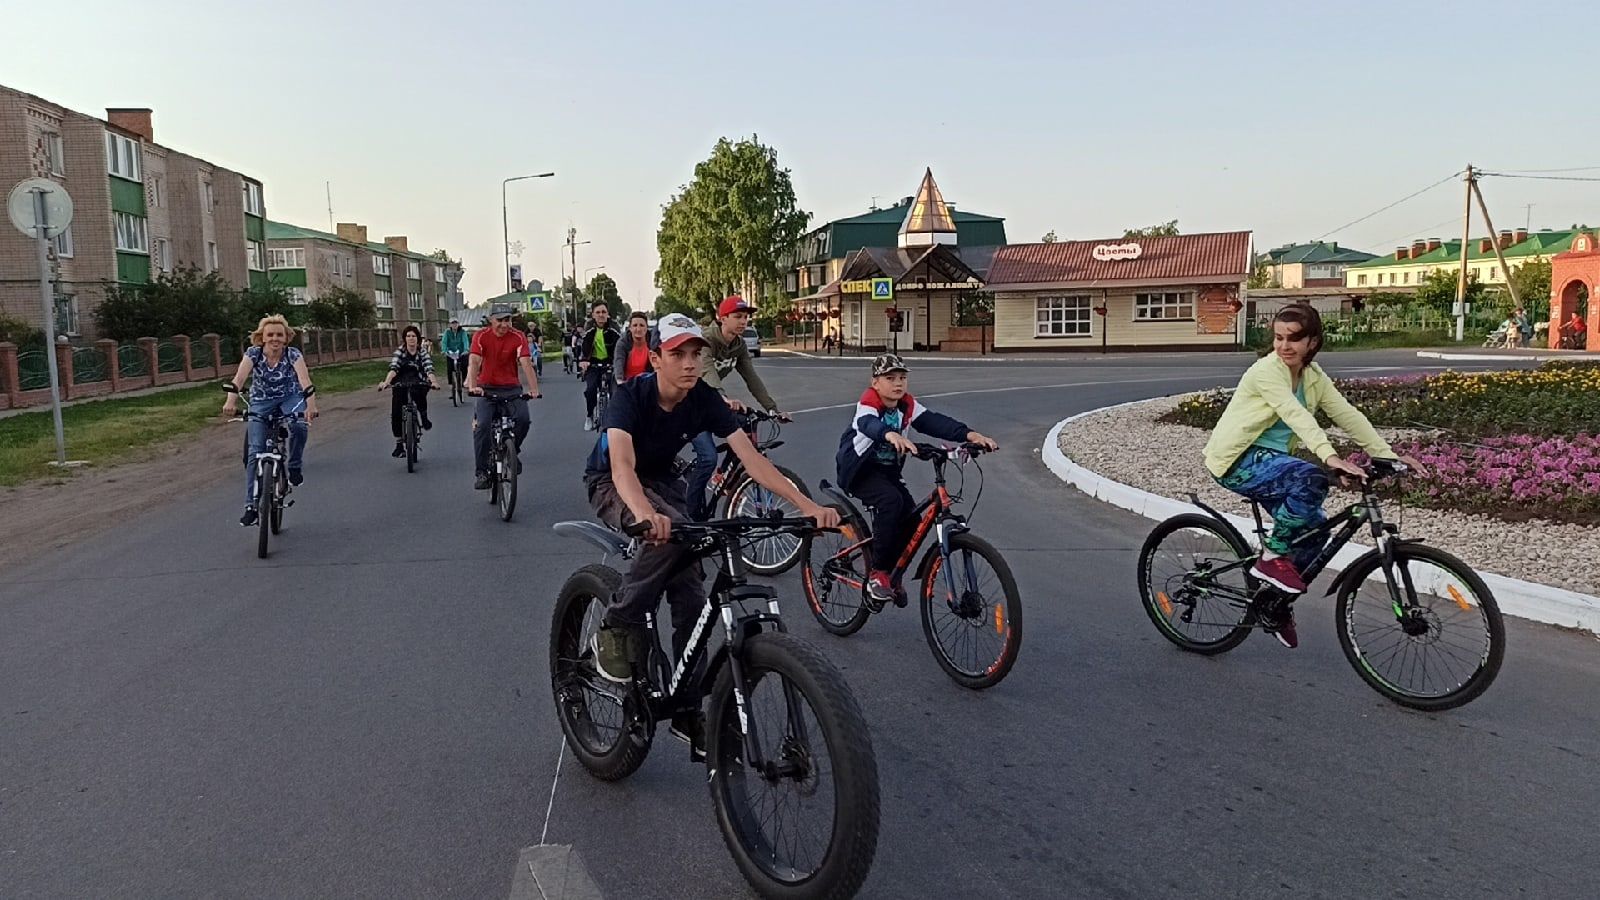 Свыше ста алексеевцев приняли участие в велопробеге посвящённому Дню России